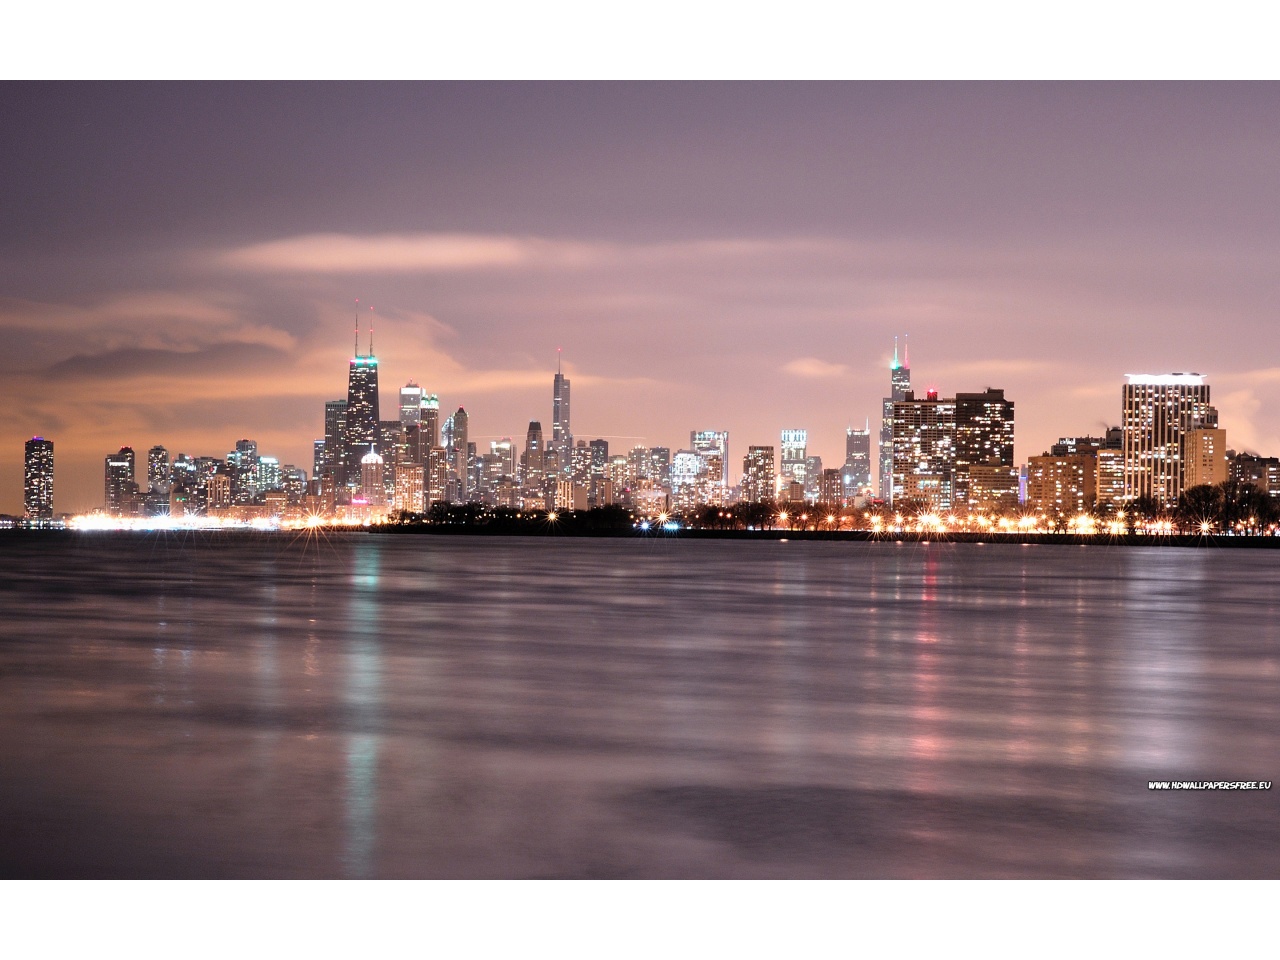 Chicago Skyline Wallpaper In Resolution